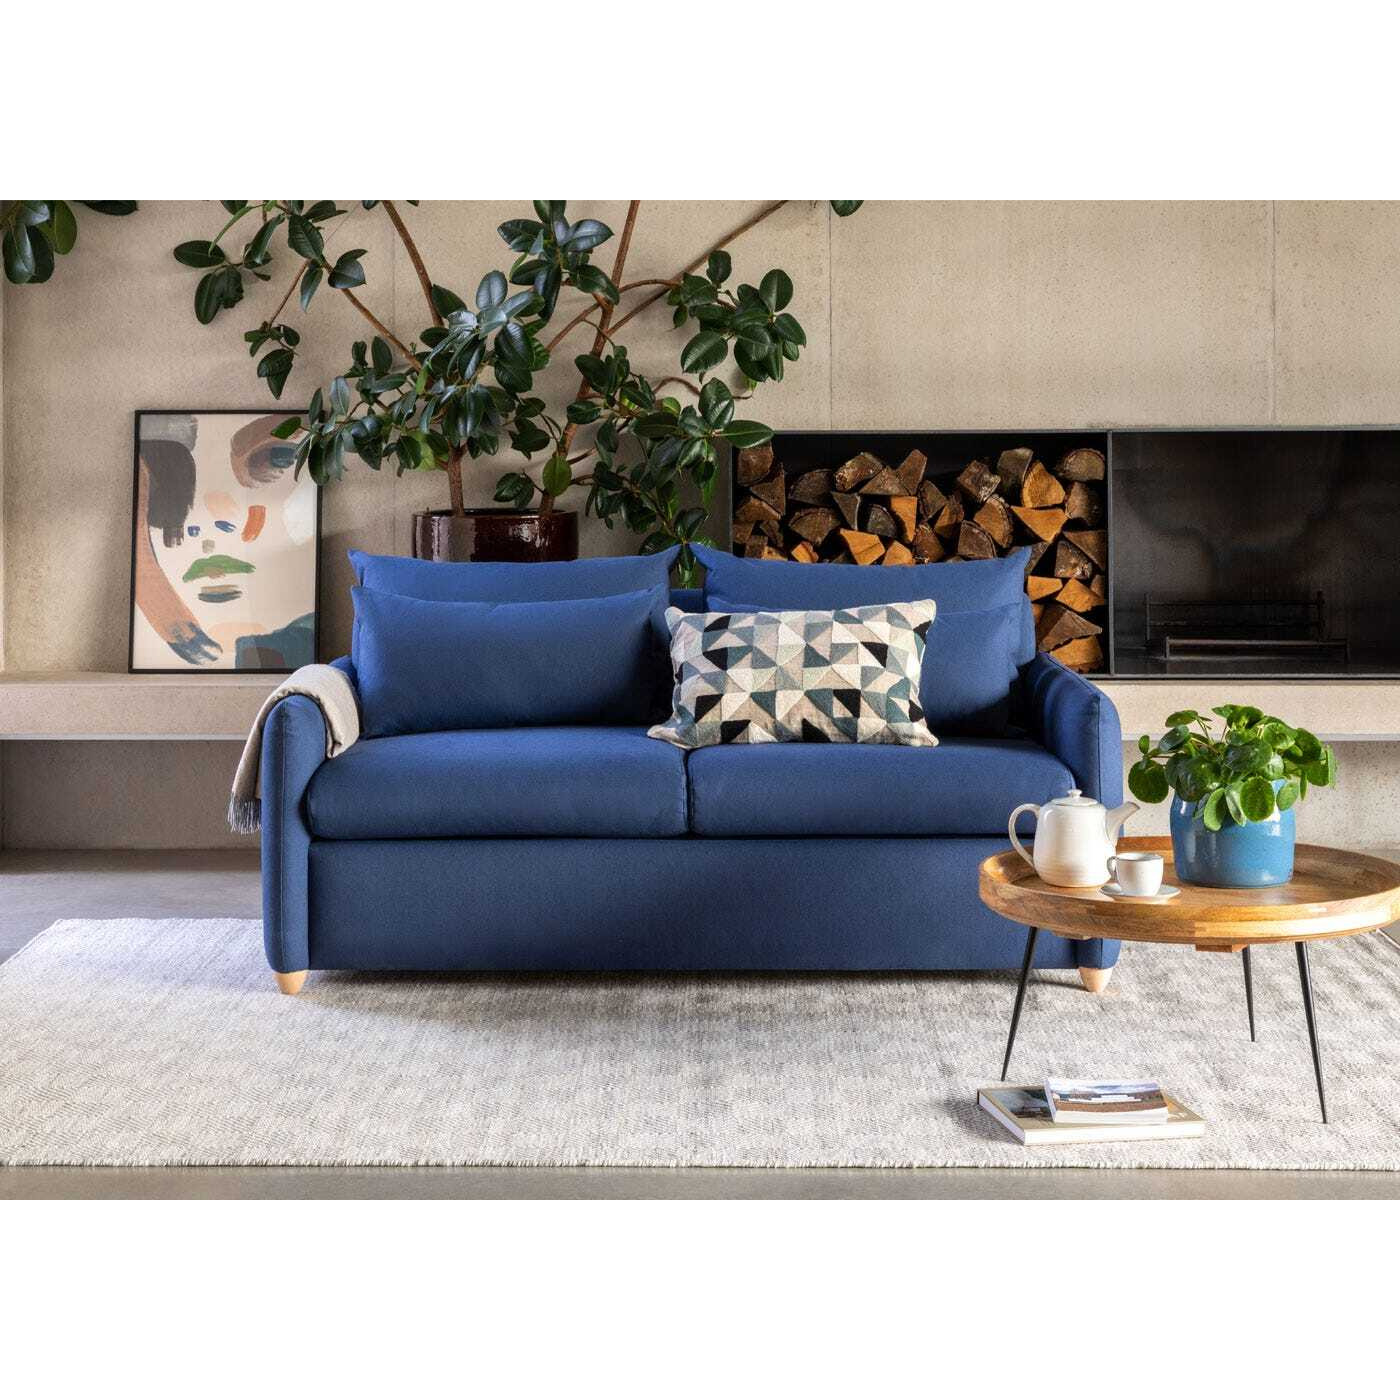 Heal's Pillow Medium Left Hand Corner Chaise Sofa Bed Smart Velvet Blue Natural Feet - Heal's UK Bedroom Furniture